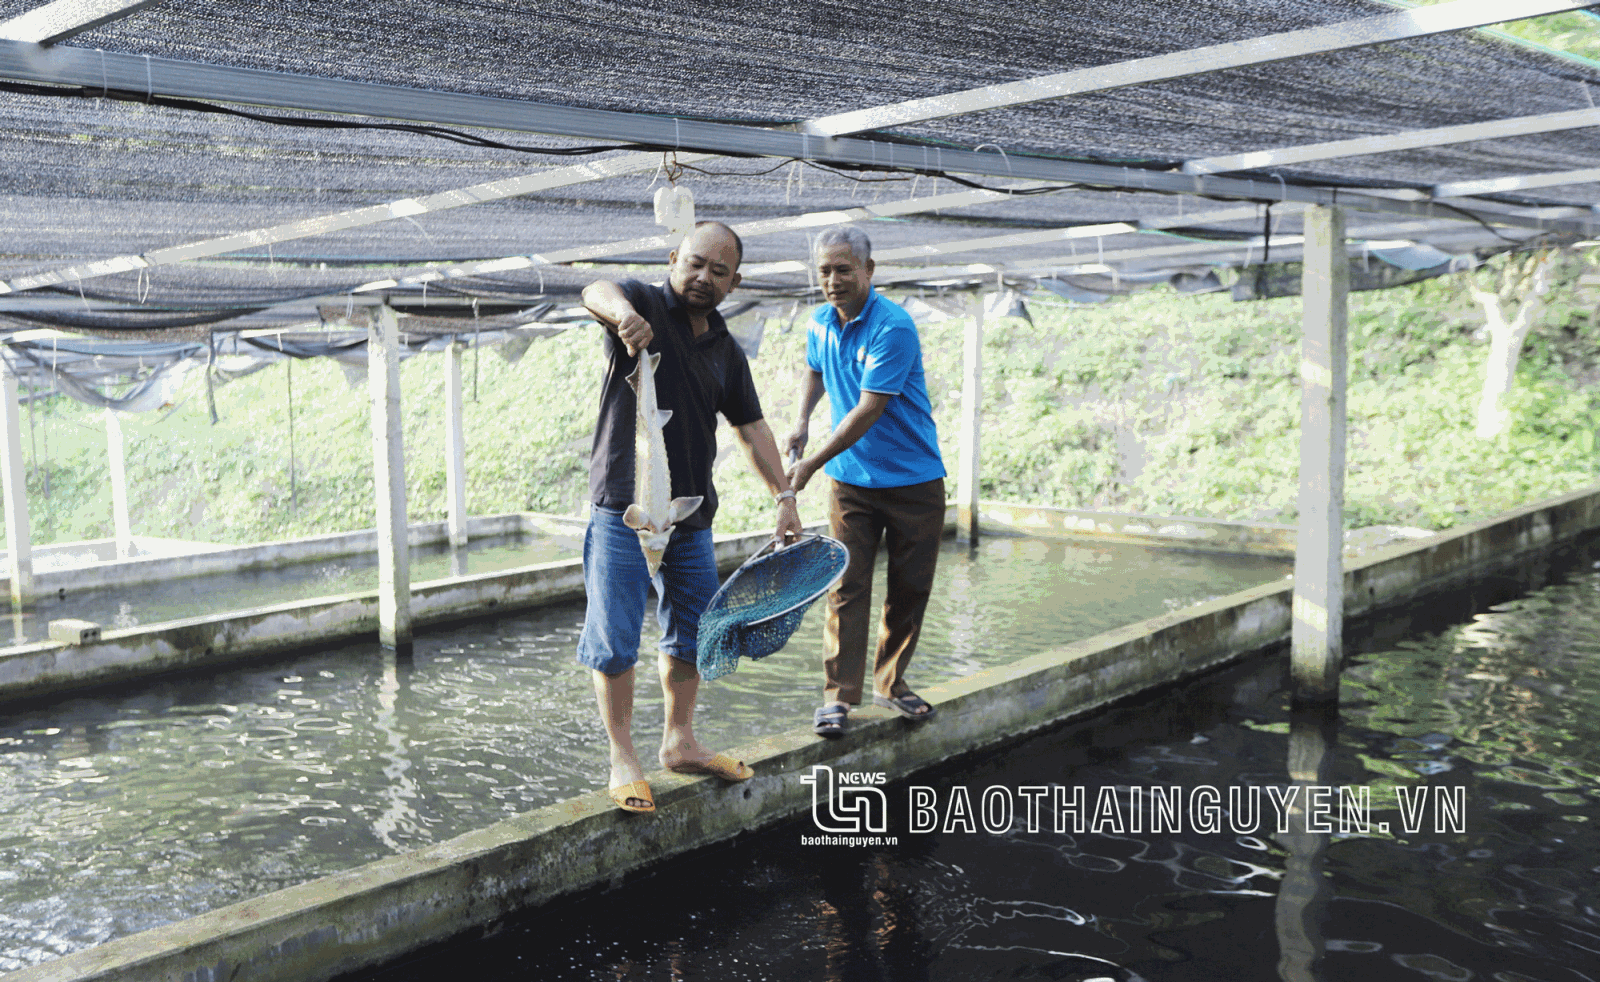 Mô hình nuôi cá tầm, cá chép giòn tại xóm Đồng Chuối được xã Dân Tiến định hướng nhân rộng, tạo cơ hội phát triển kinh tế cho người dân.